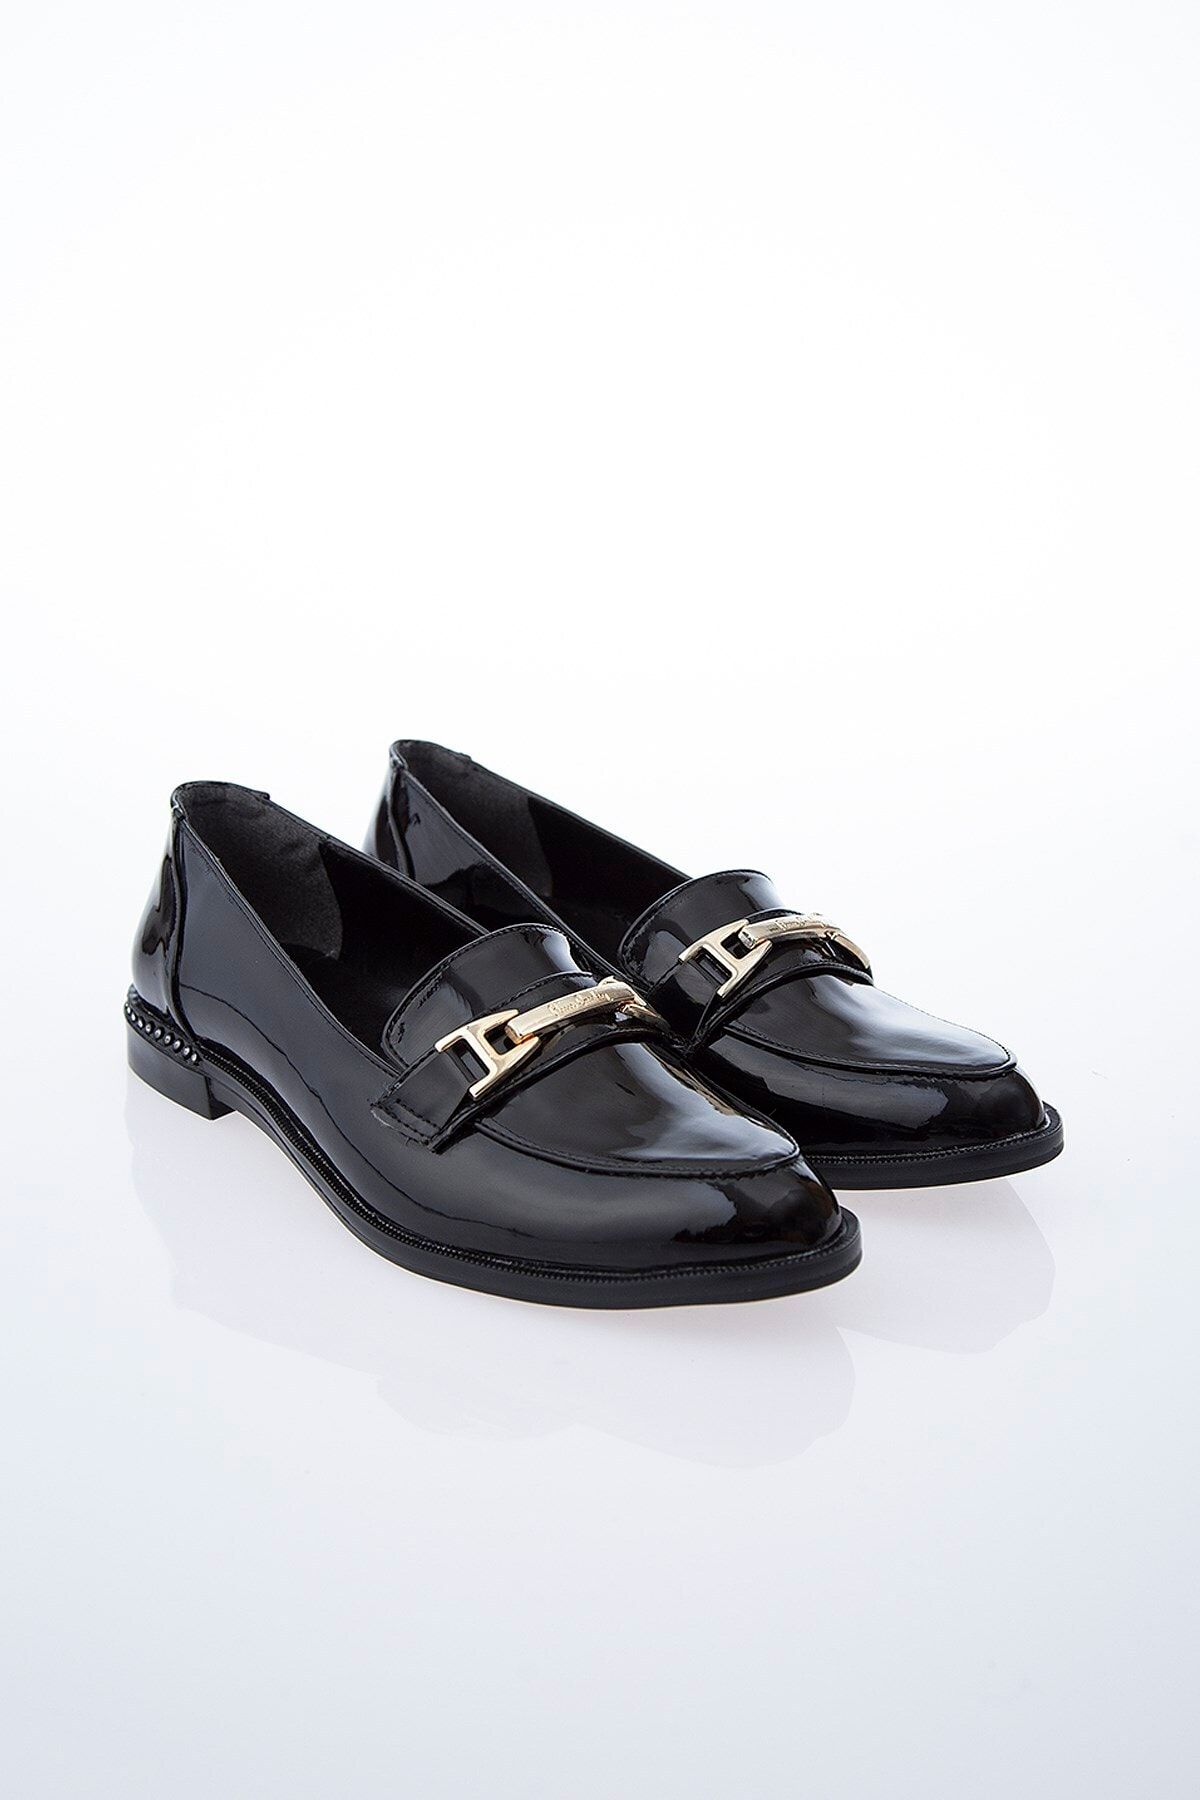 Pierre Cardin Pc-50610 Rugan Siyah Kadın Ayakkabı